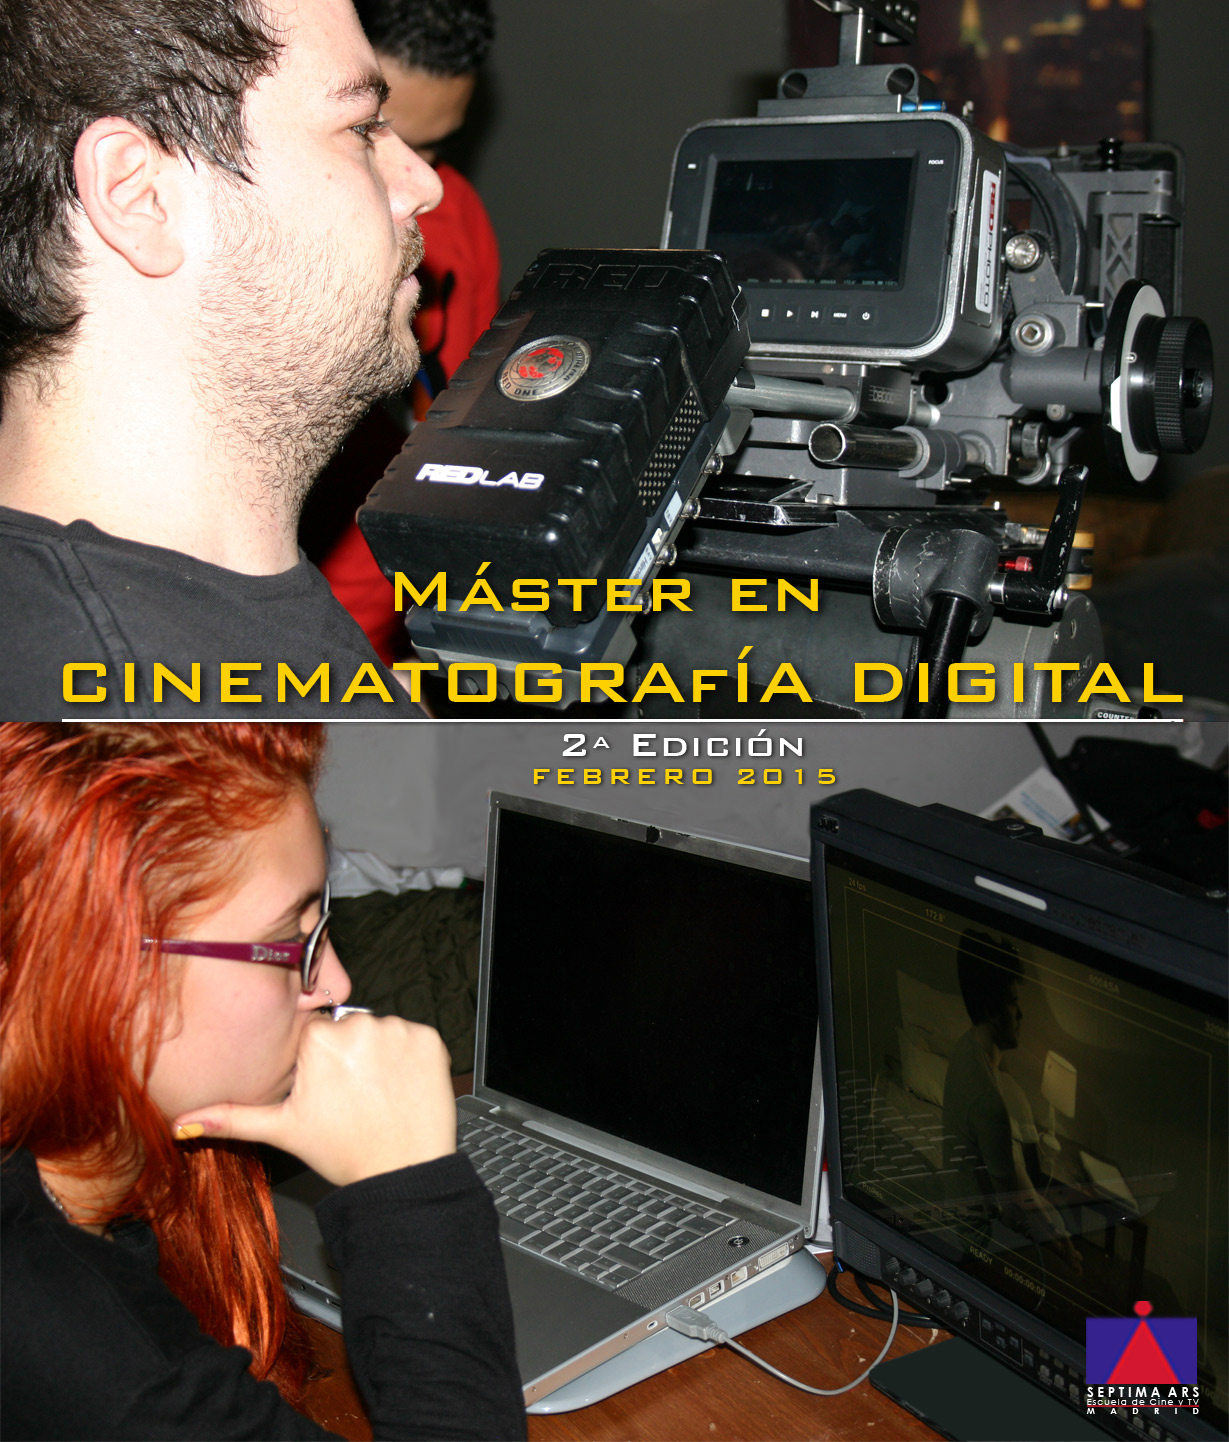 Mster en Cinematografa Digital Escuela de Cine y TV Septima Ars Madrid